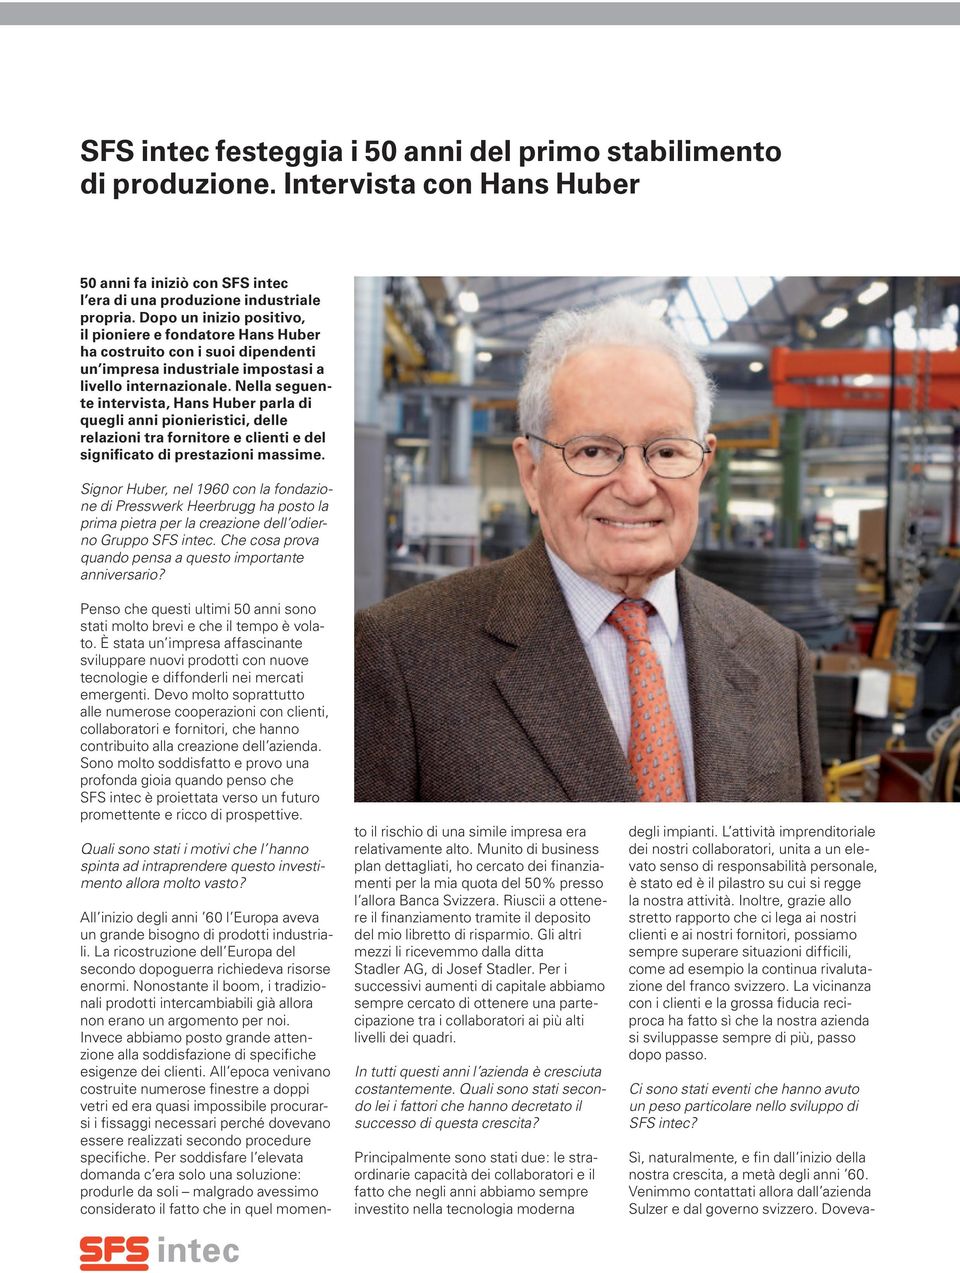 Nella seguente intervista, Hans Huber parla di quegli anni pionieristici, delle relazioni tra fornitore e clienti e del significato di prestazioni massime.